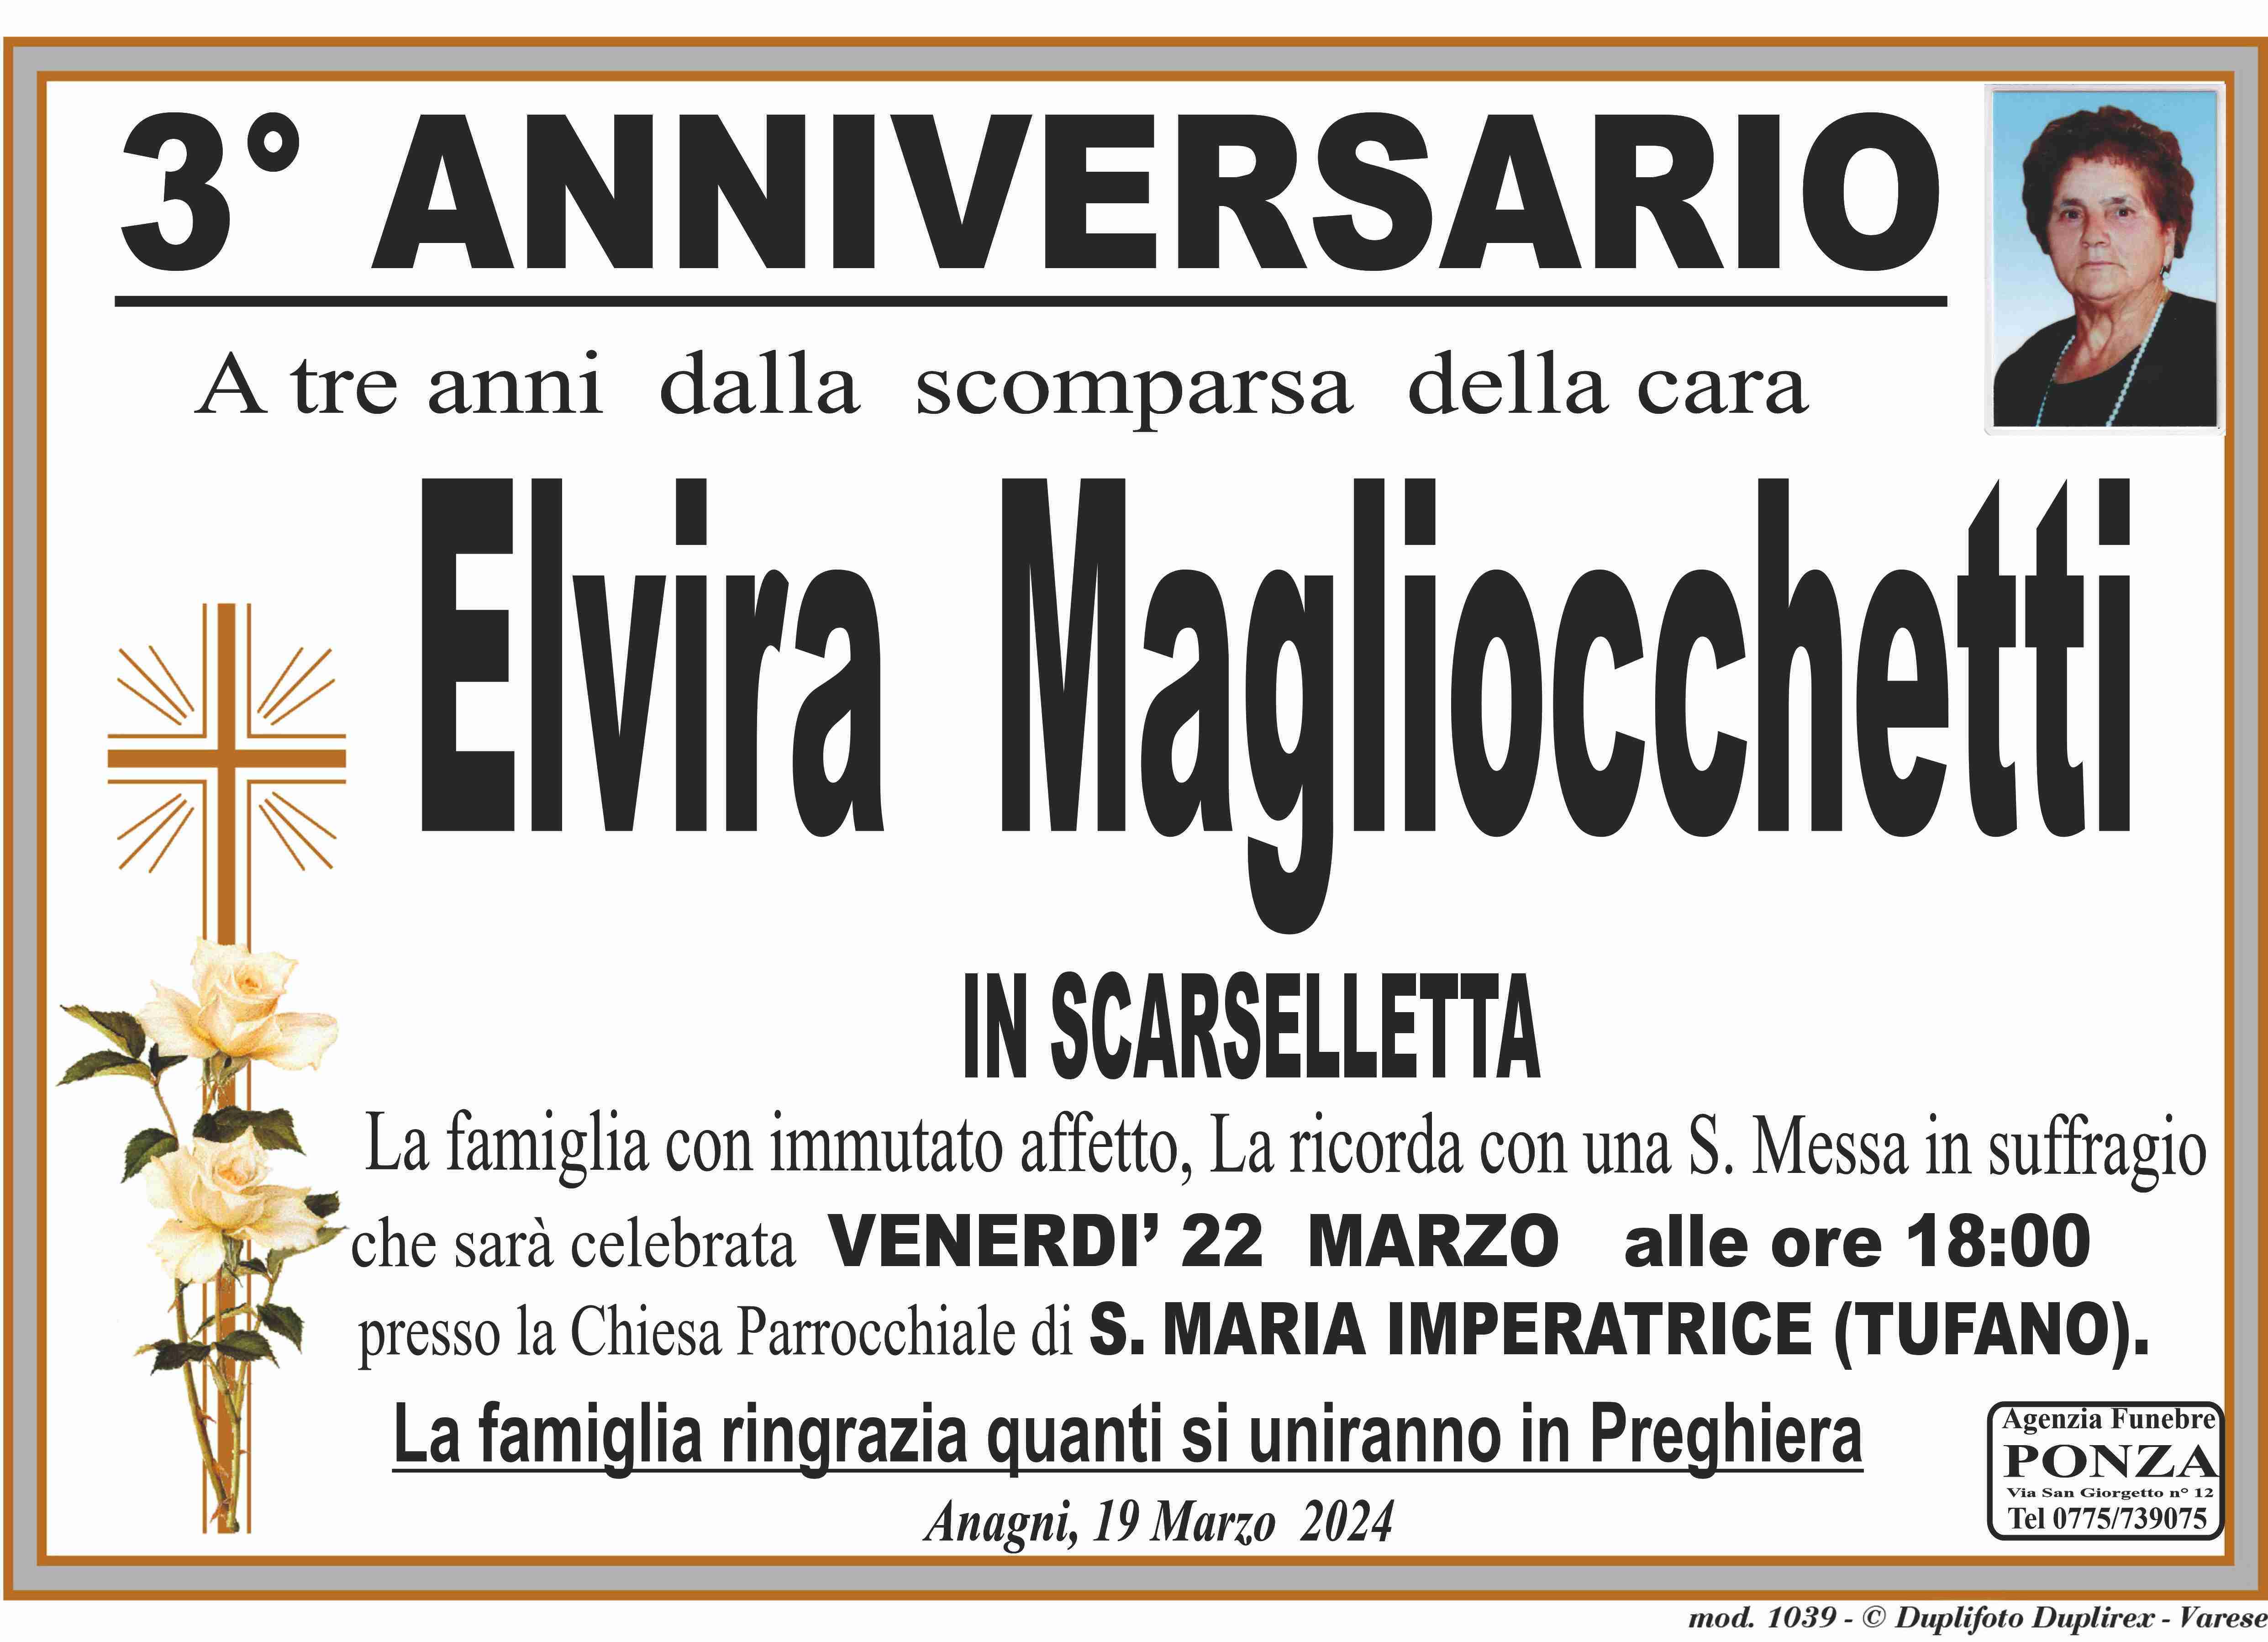 Elvira Magliocchetti